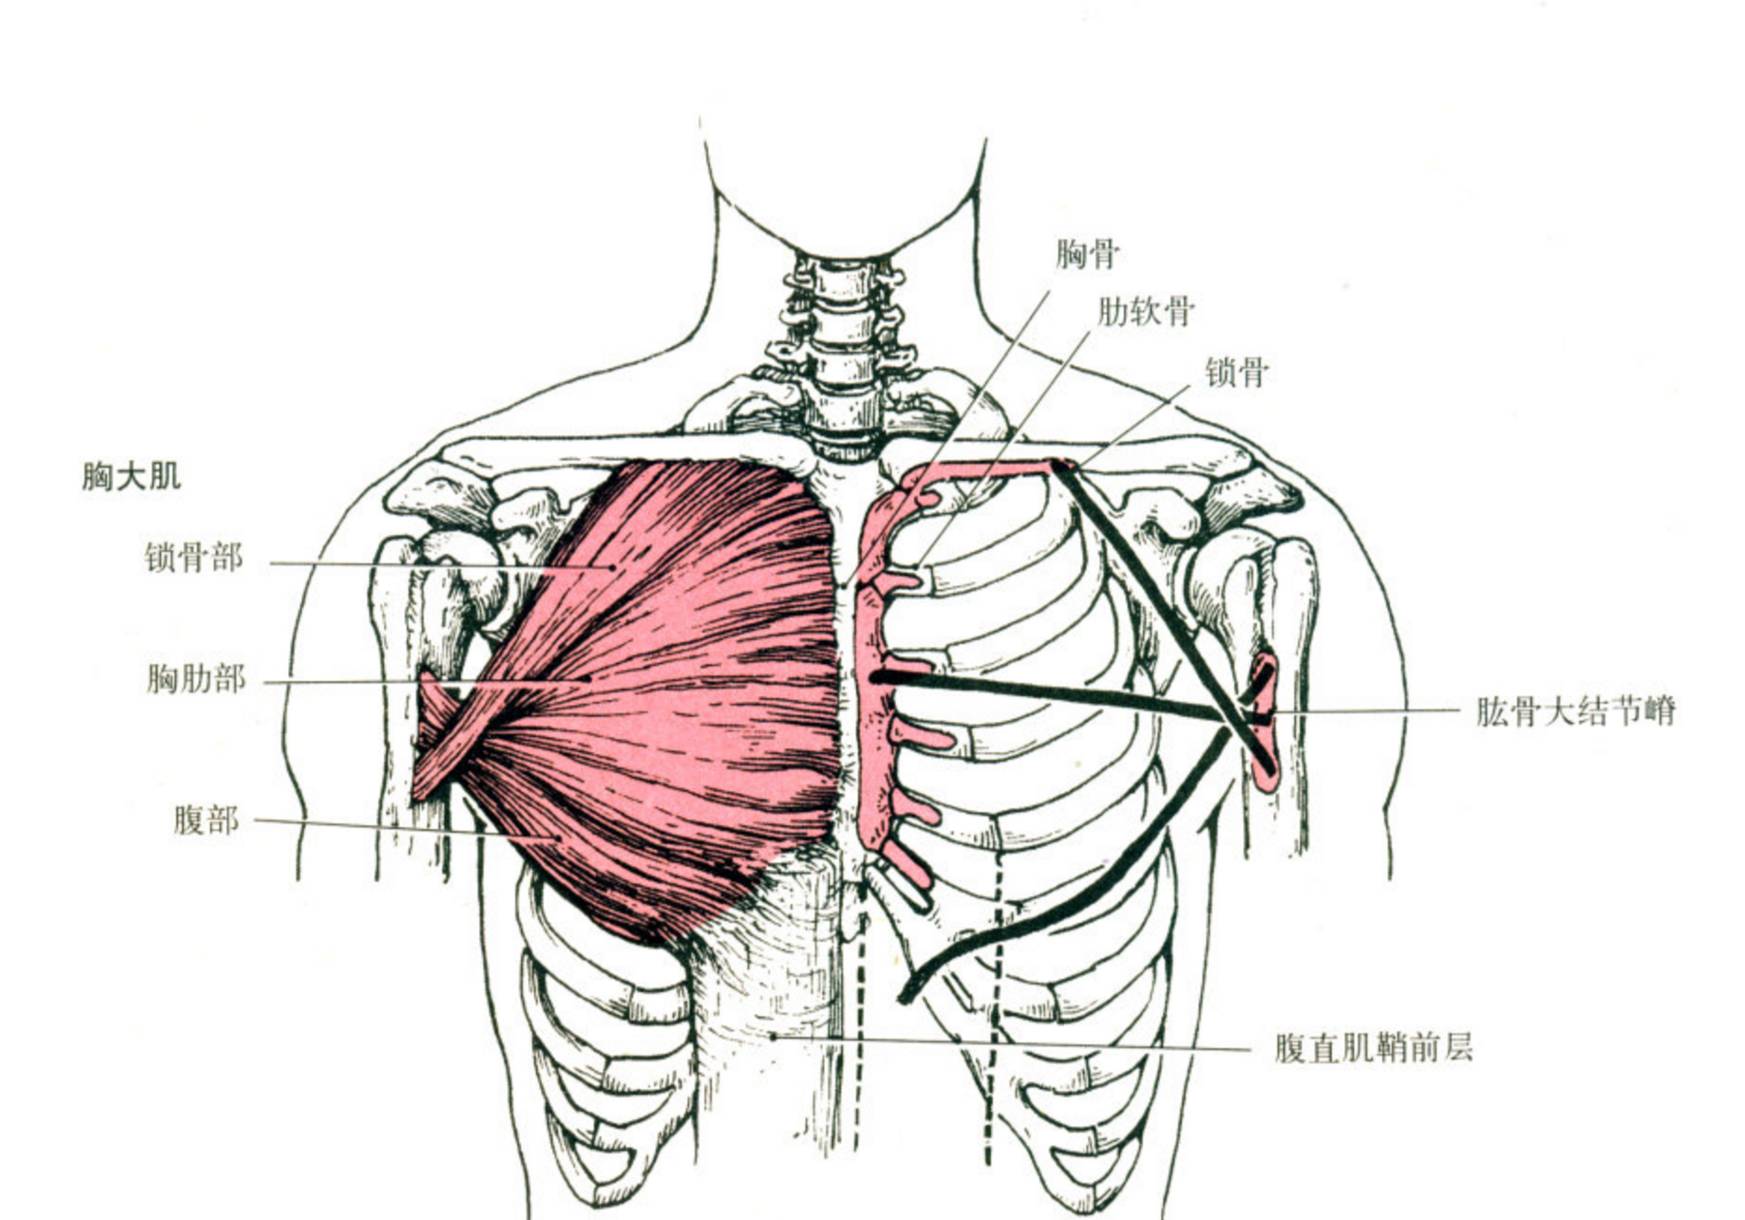 可以看到:胸肌上部一边连接着锁骨,一边反向连接大臂肱骨大结节嵴.